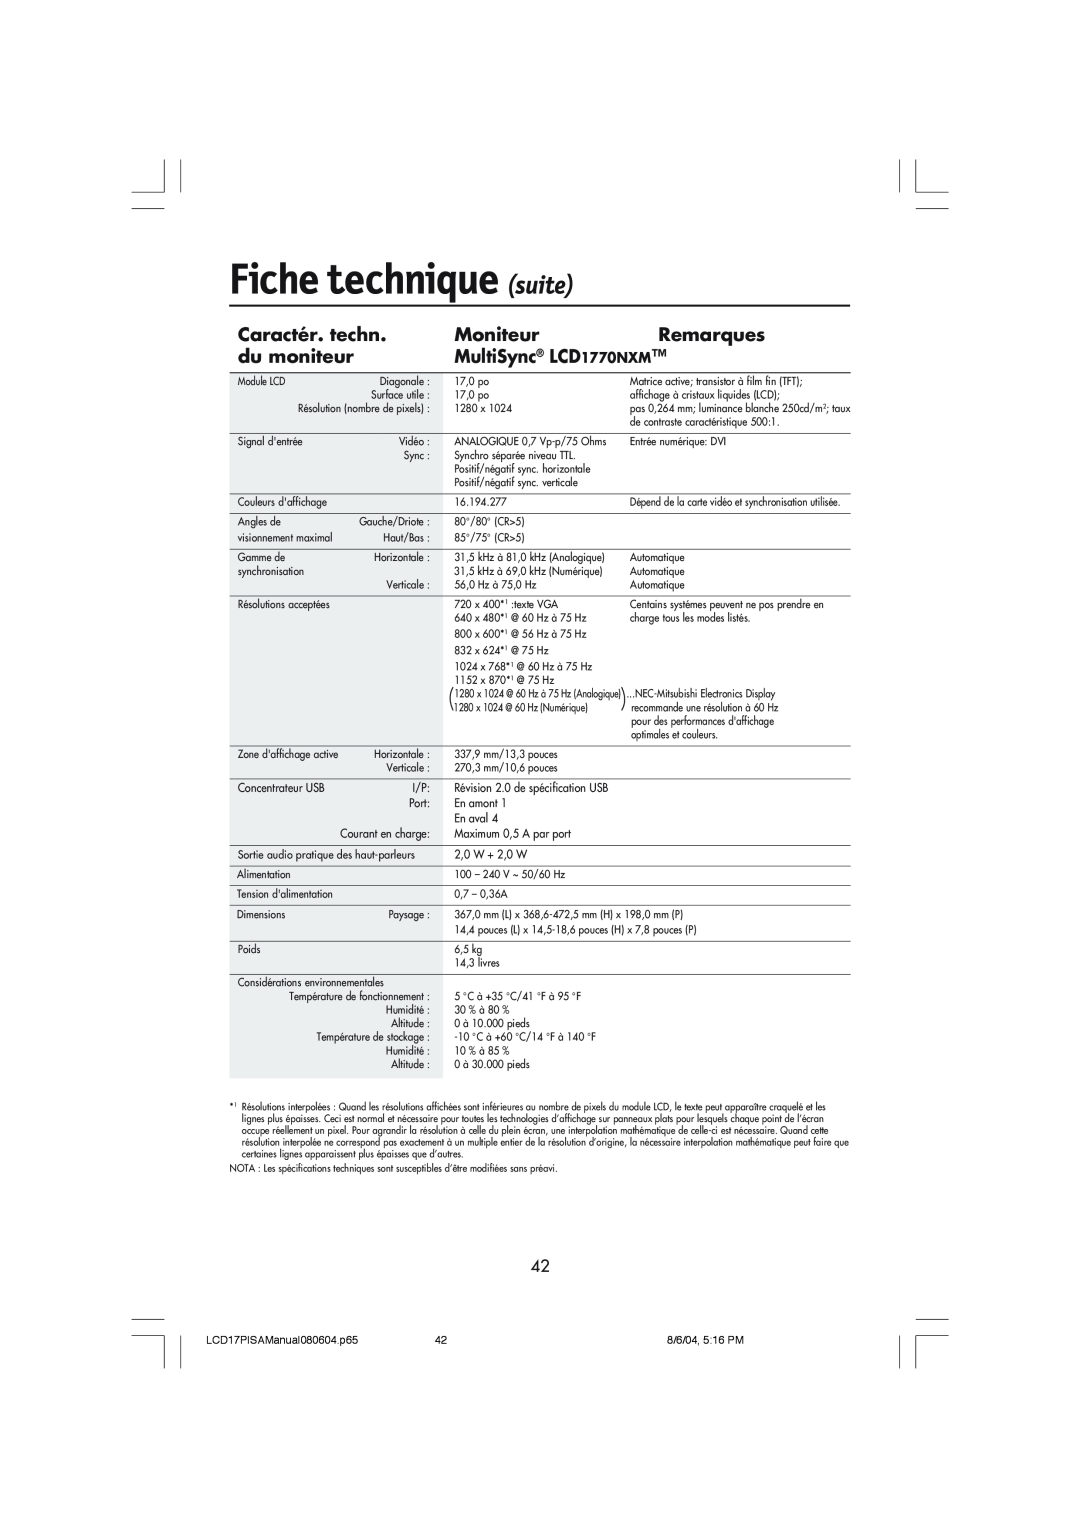 NEC LCD1770V user manual Fiche technique suite, Caractér. techn, Moniteur, Remarques, du moniteur, MultiSync LCD 1770NXM 